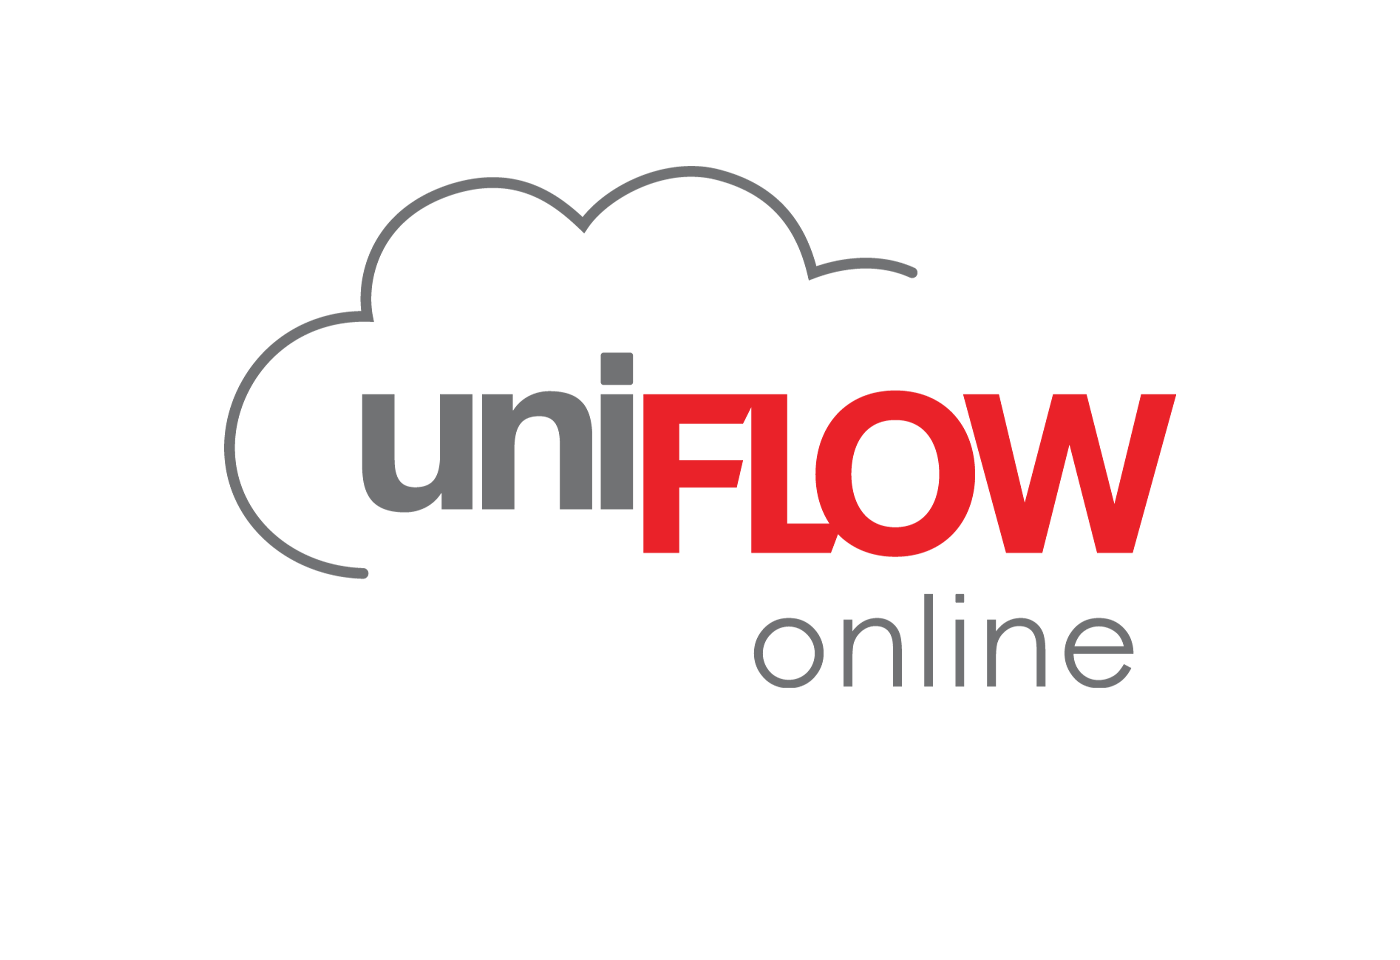 uniFLOW Online